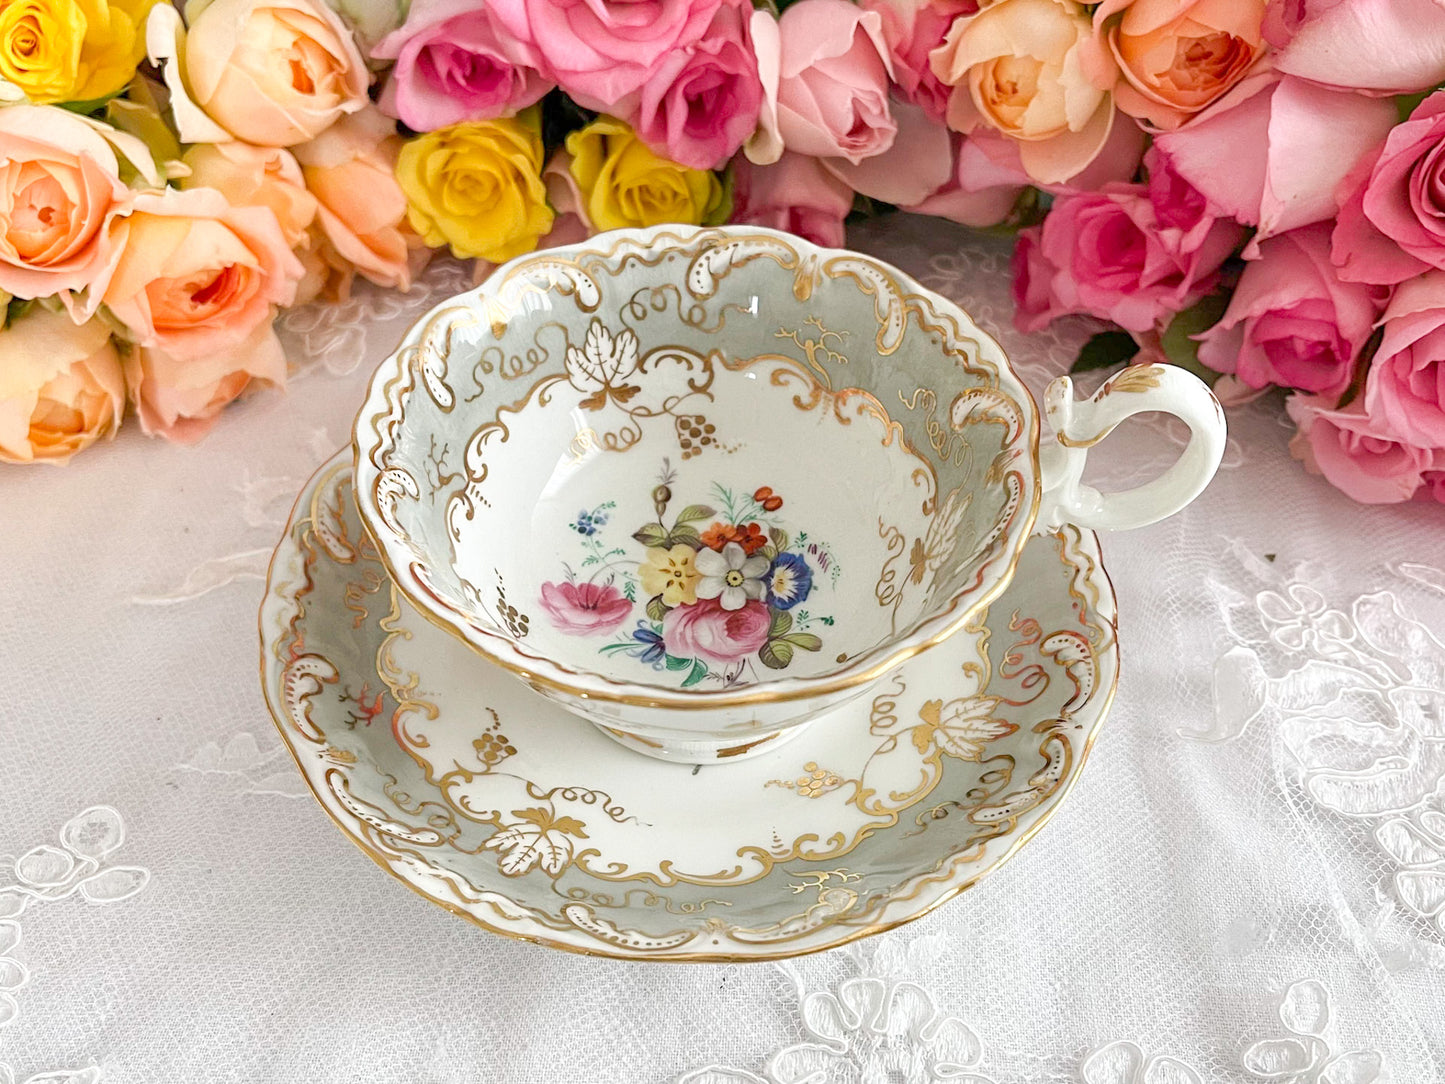 コールポートのロココリバイバルのアンティークカップ。ハンドペイントで描かれた花々が美しいです。Rose Antiquesは厳選した英国アンティーク磁器をご紹介しています。